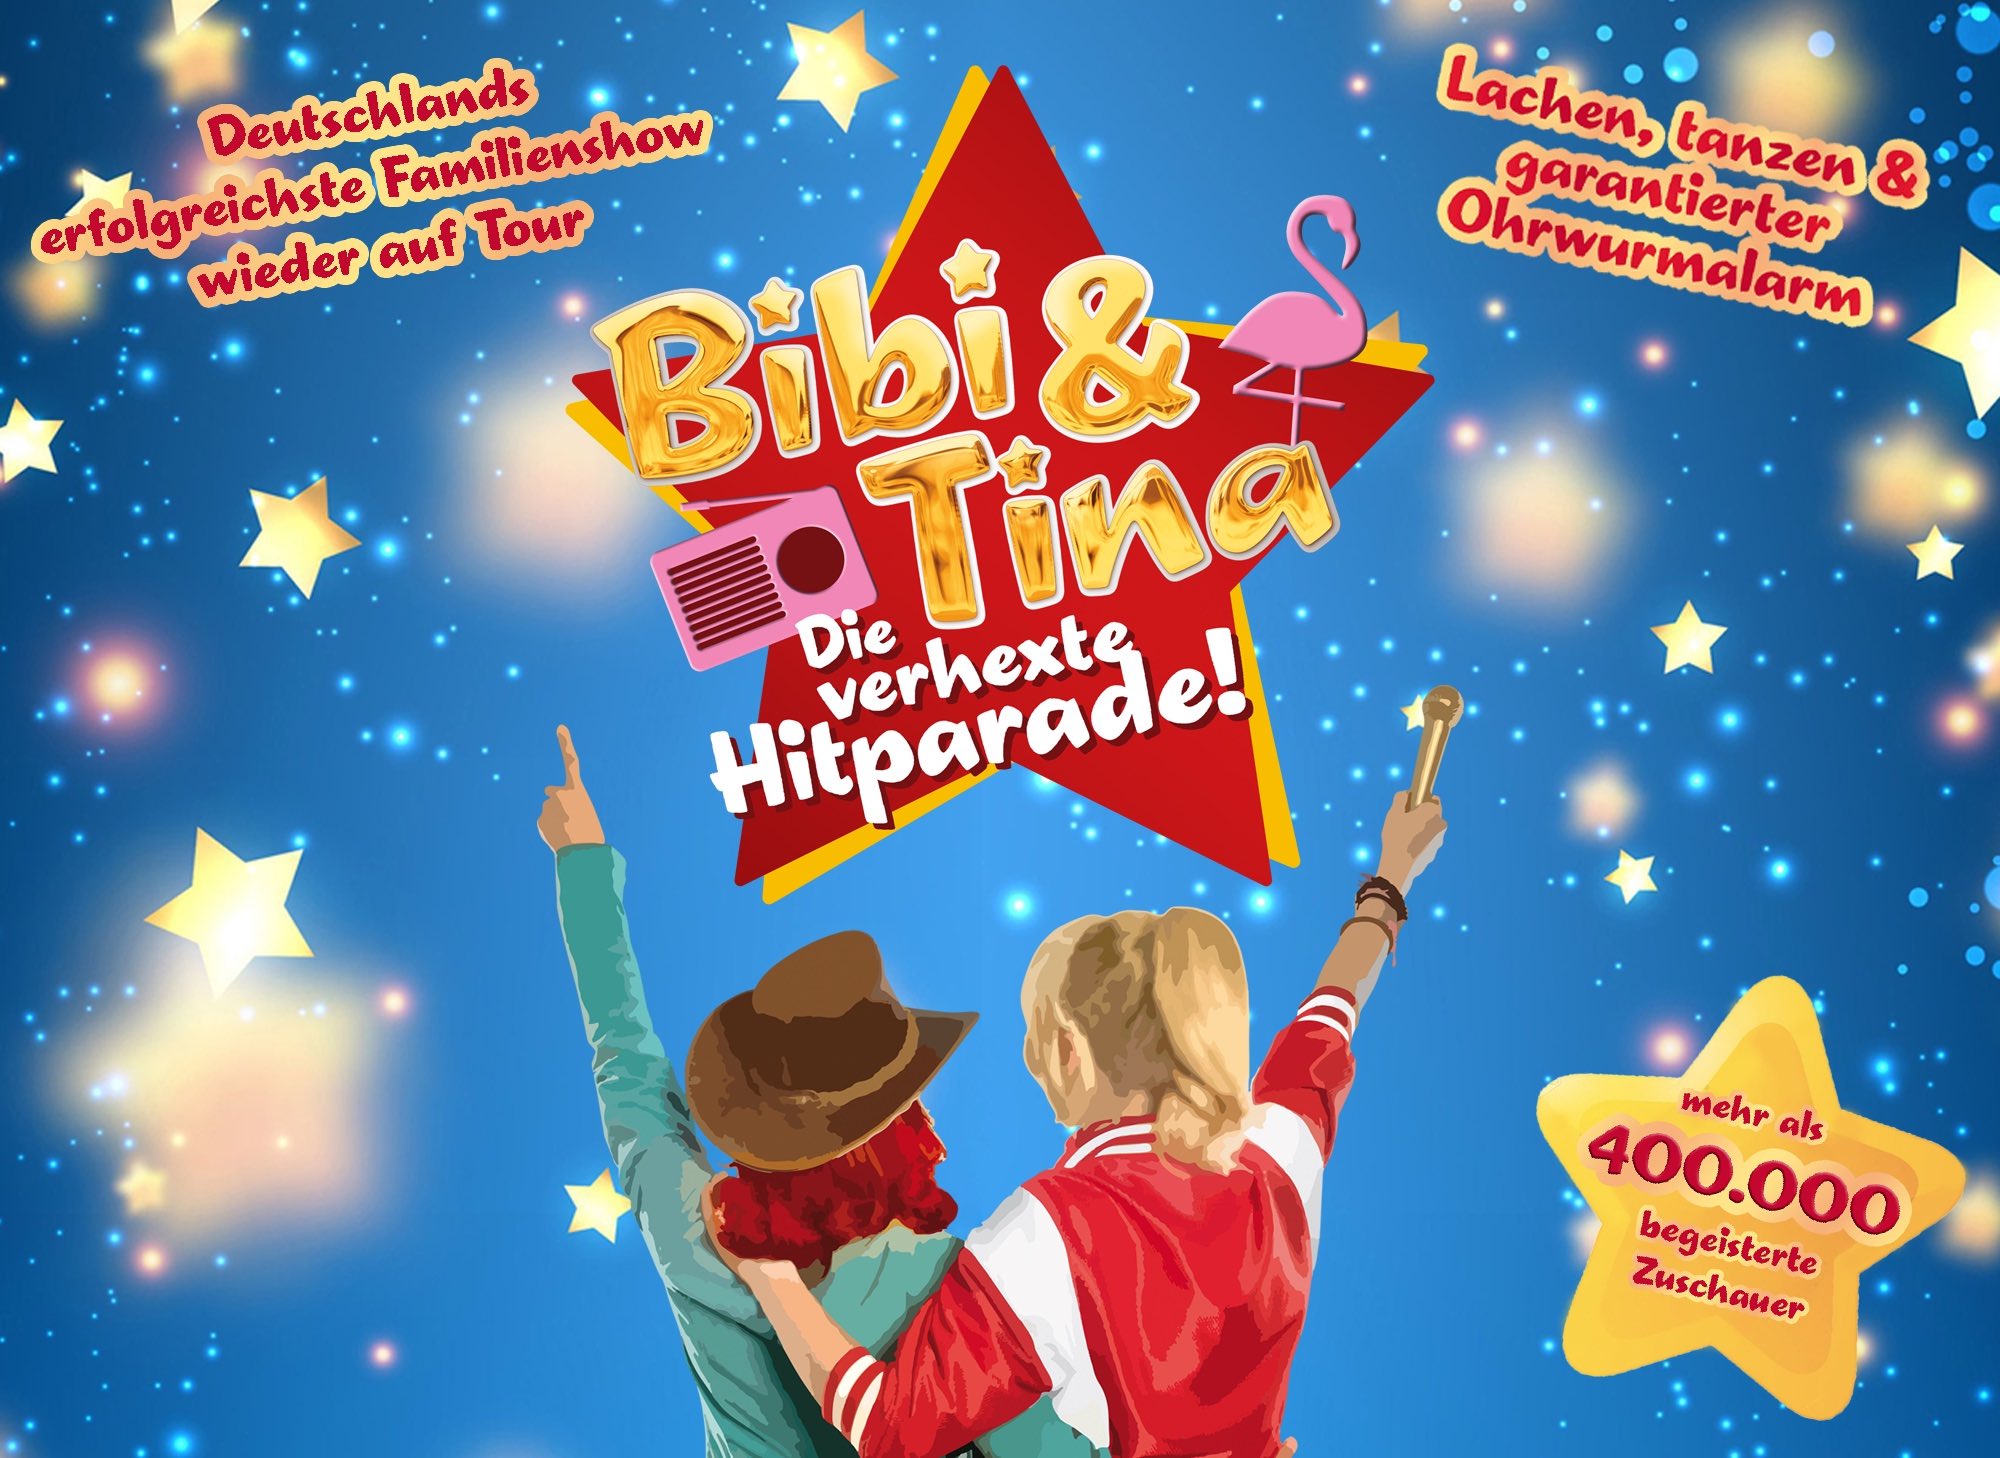 Bibi & Tina - die verhexte Hitparade Live 2023 | Freie-Pressemitteilungen.de